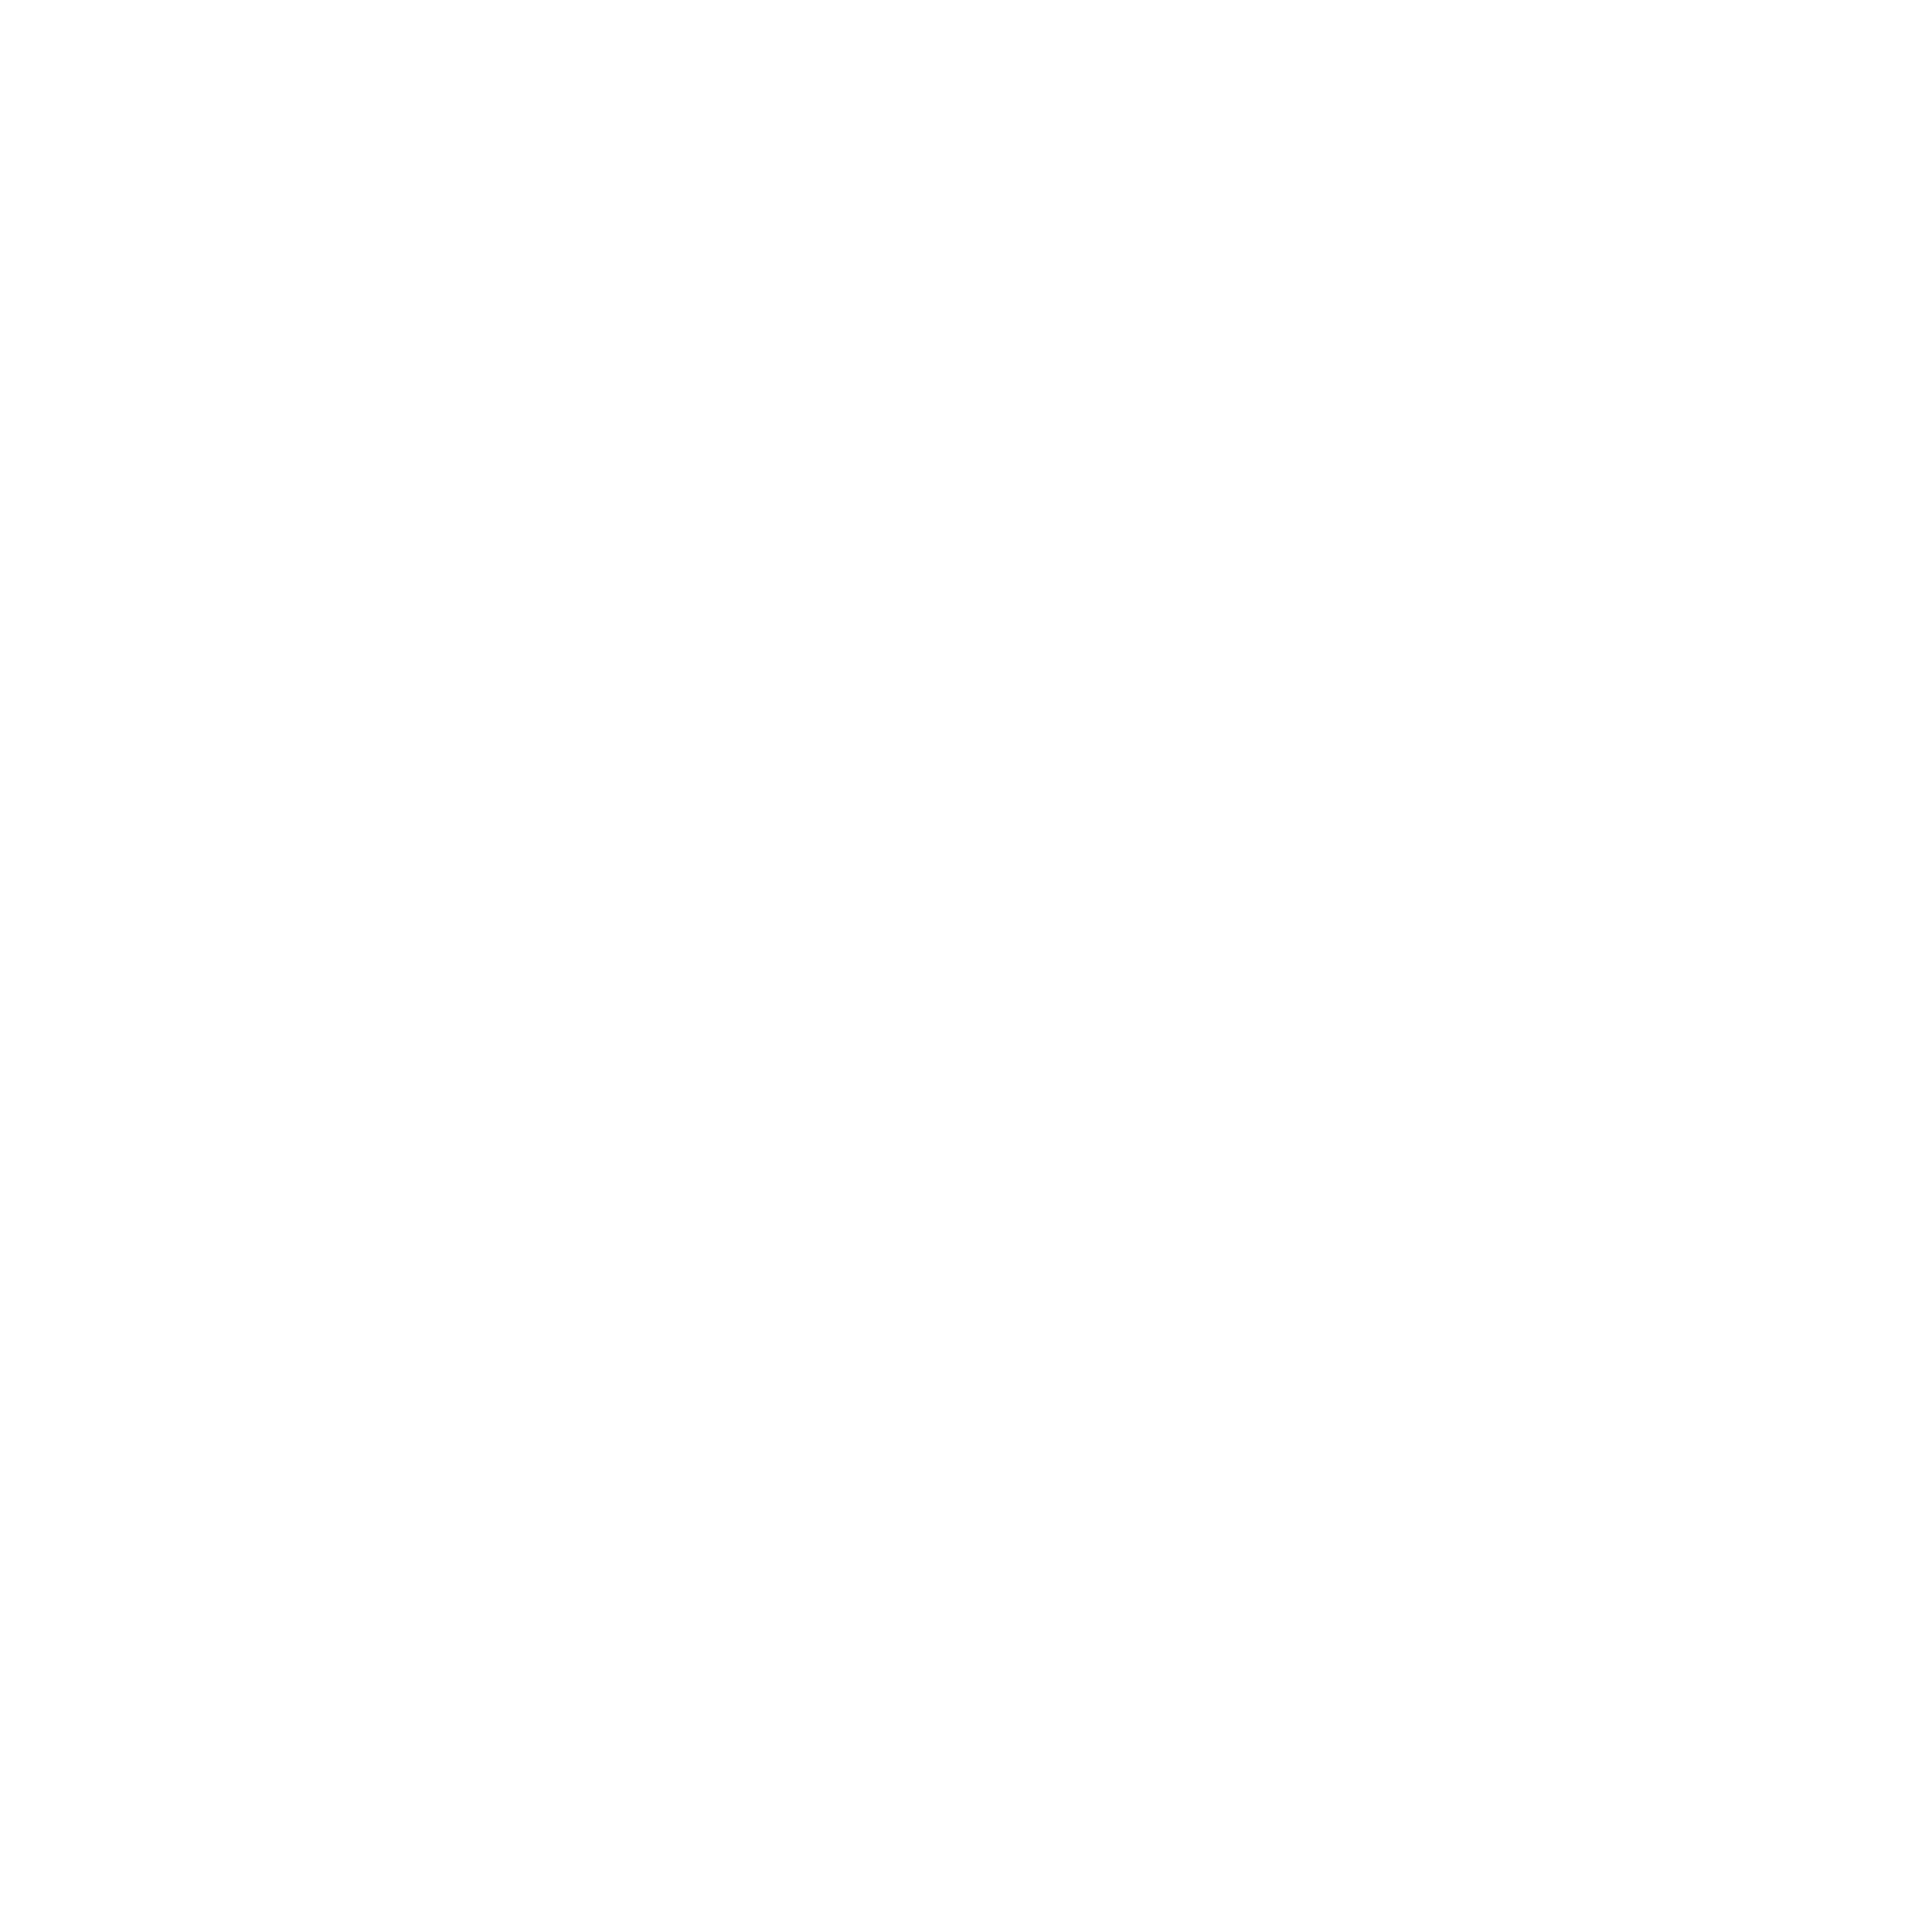 Moravia Big Band